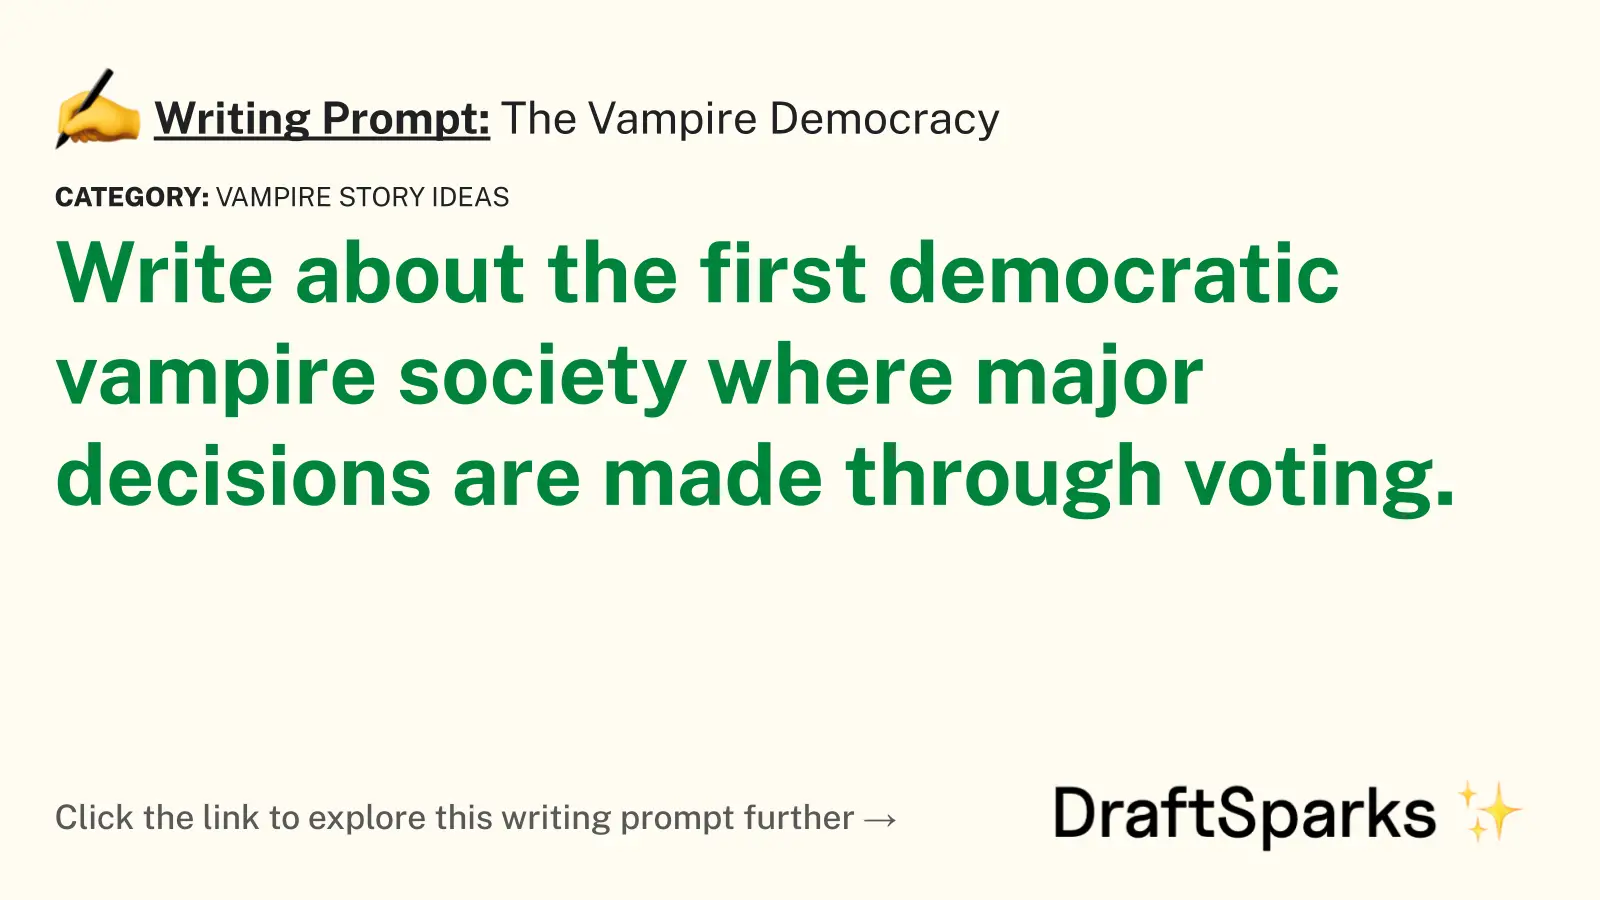 The Vampire Democracy